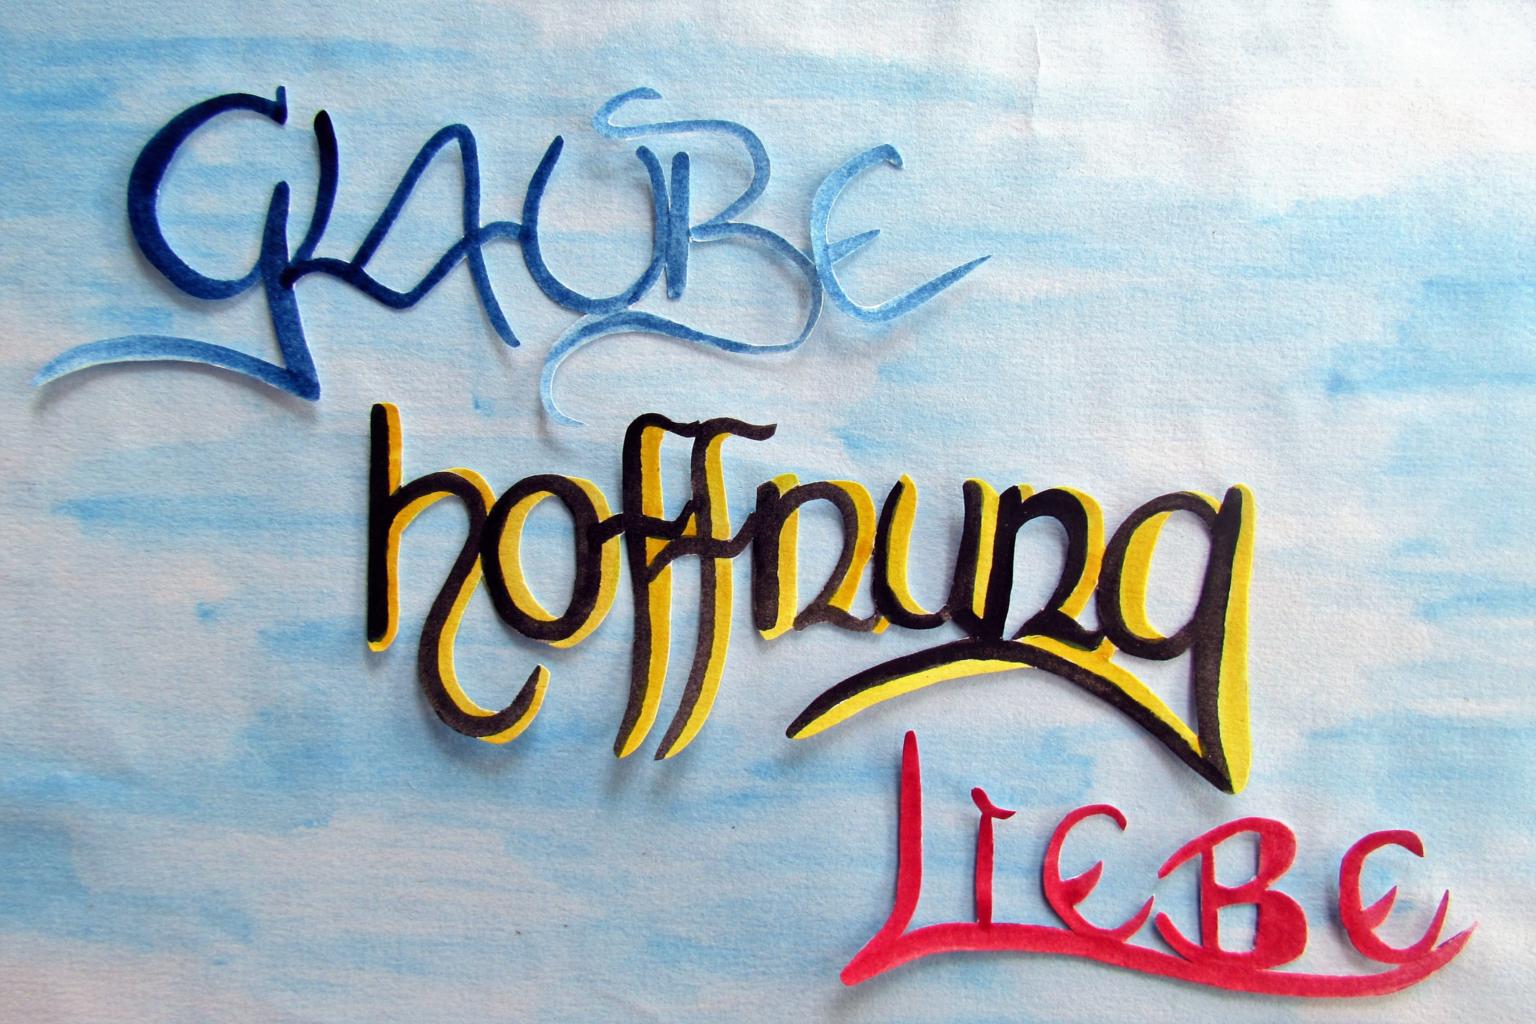 Glaube-Hoffnung-Liebe (c) Birgit Hellmanns